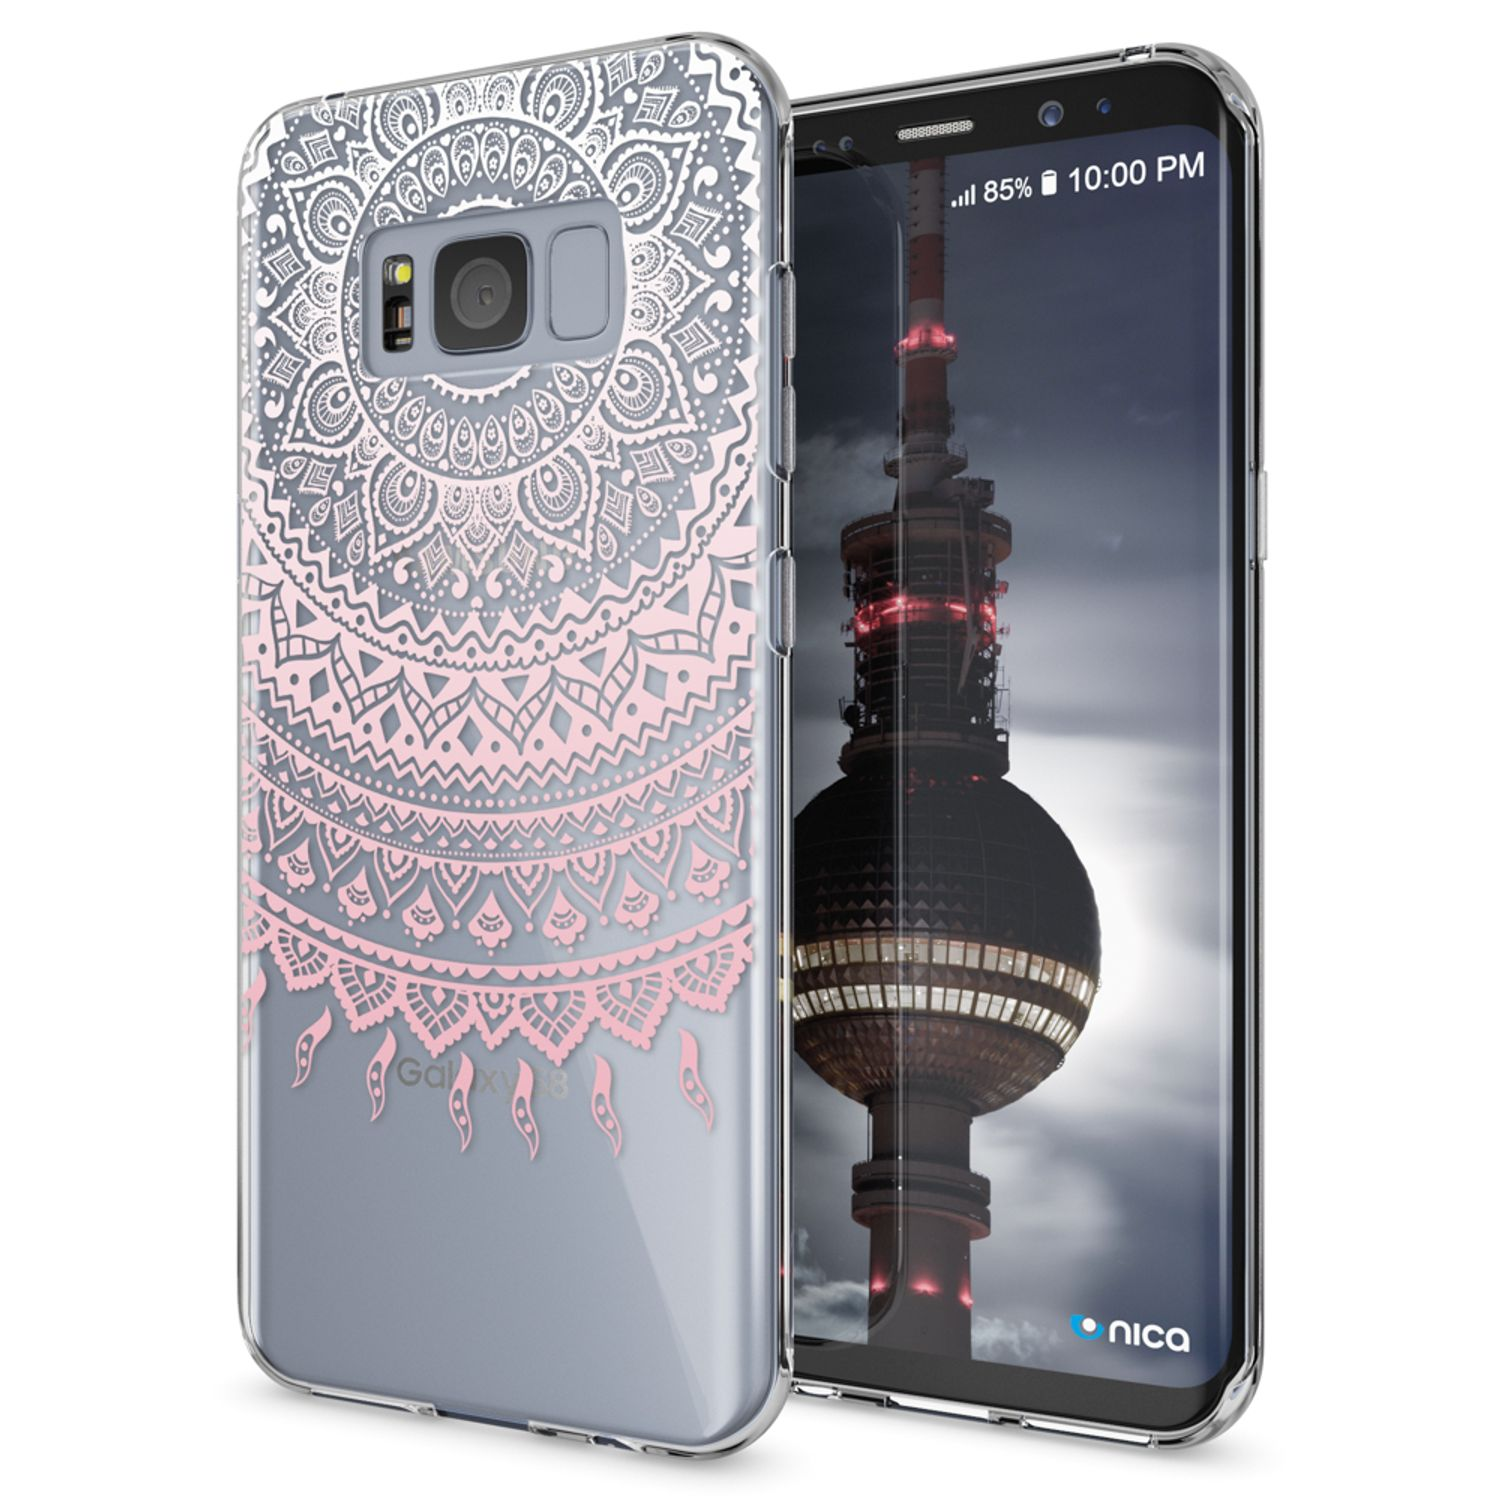 NALIA Motiv Silikon S8, Mehrfarbig Galaxy Backcover, Hülle, Samsung